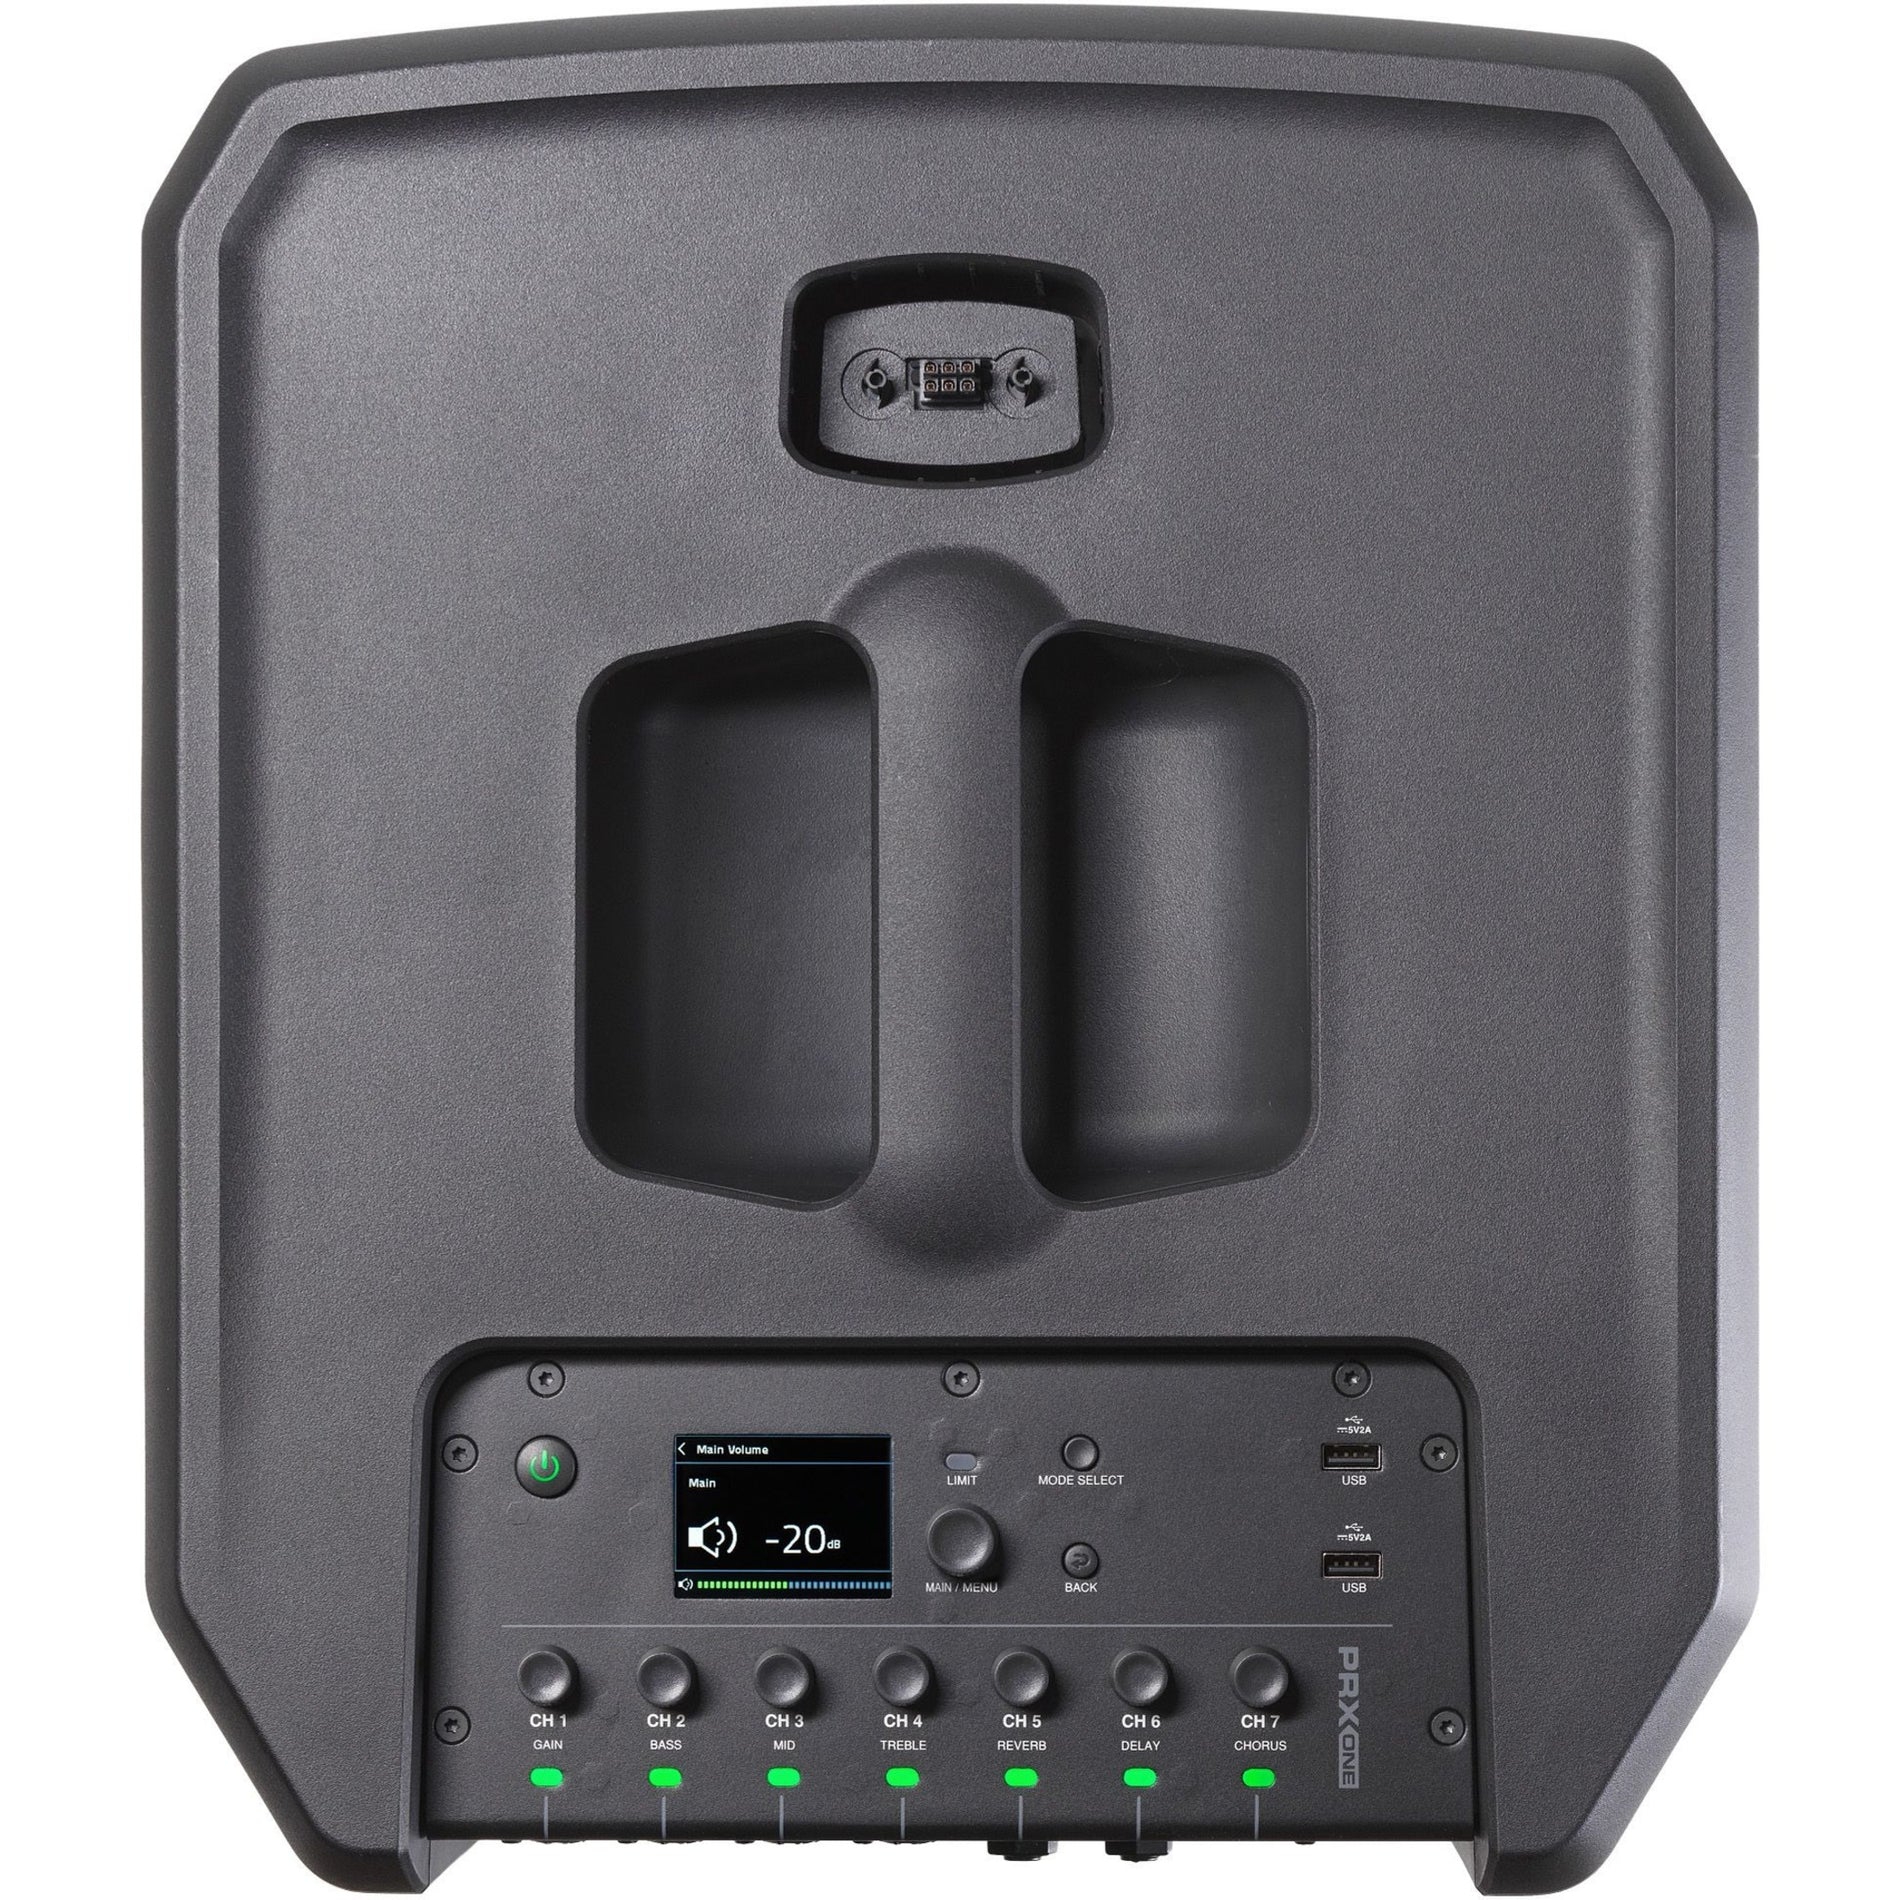 JBL JBL-PRXONE-NA جميع في واحد مدفوعة العمود الحزمة مع خلاط و دسب، 2000 W مكبر الصوت، ميكروفون لاسلكي، بلوتوث، منفذ USB، جبل الجدار